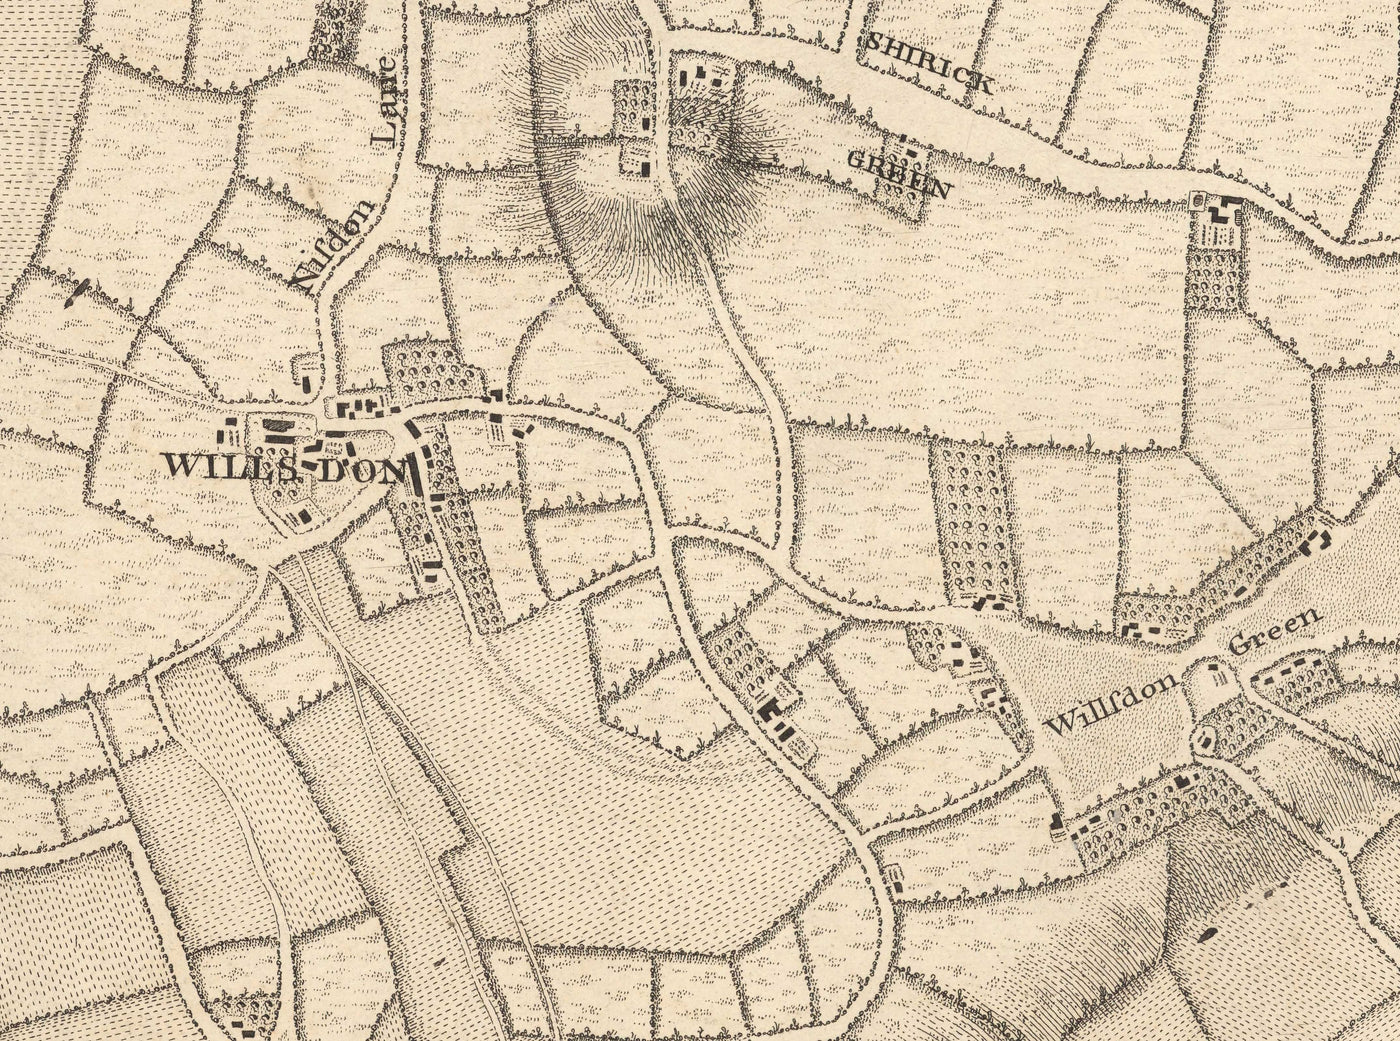 Antiguo mapa del oeste y noroeste de Londres en 1746 por John Rocque - Hampstead, Kingsbury, Neasden, Willesden, West End, NW2, NW3, NW5, NW6, NW8, NW10, W9, W10